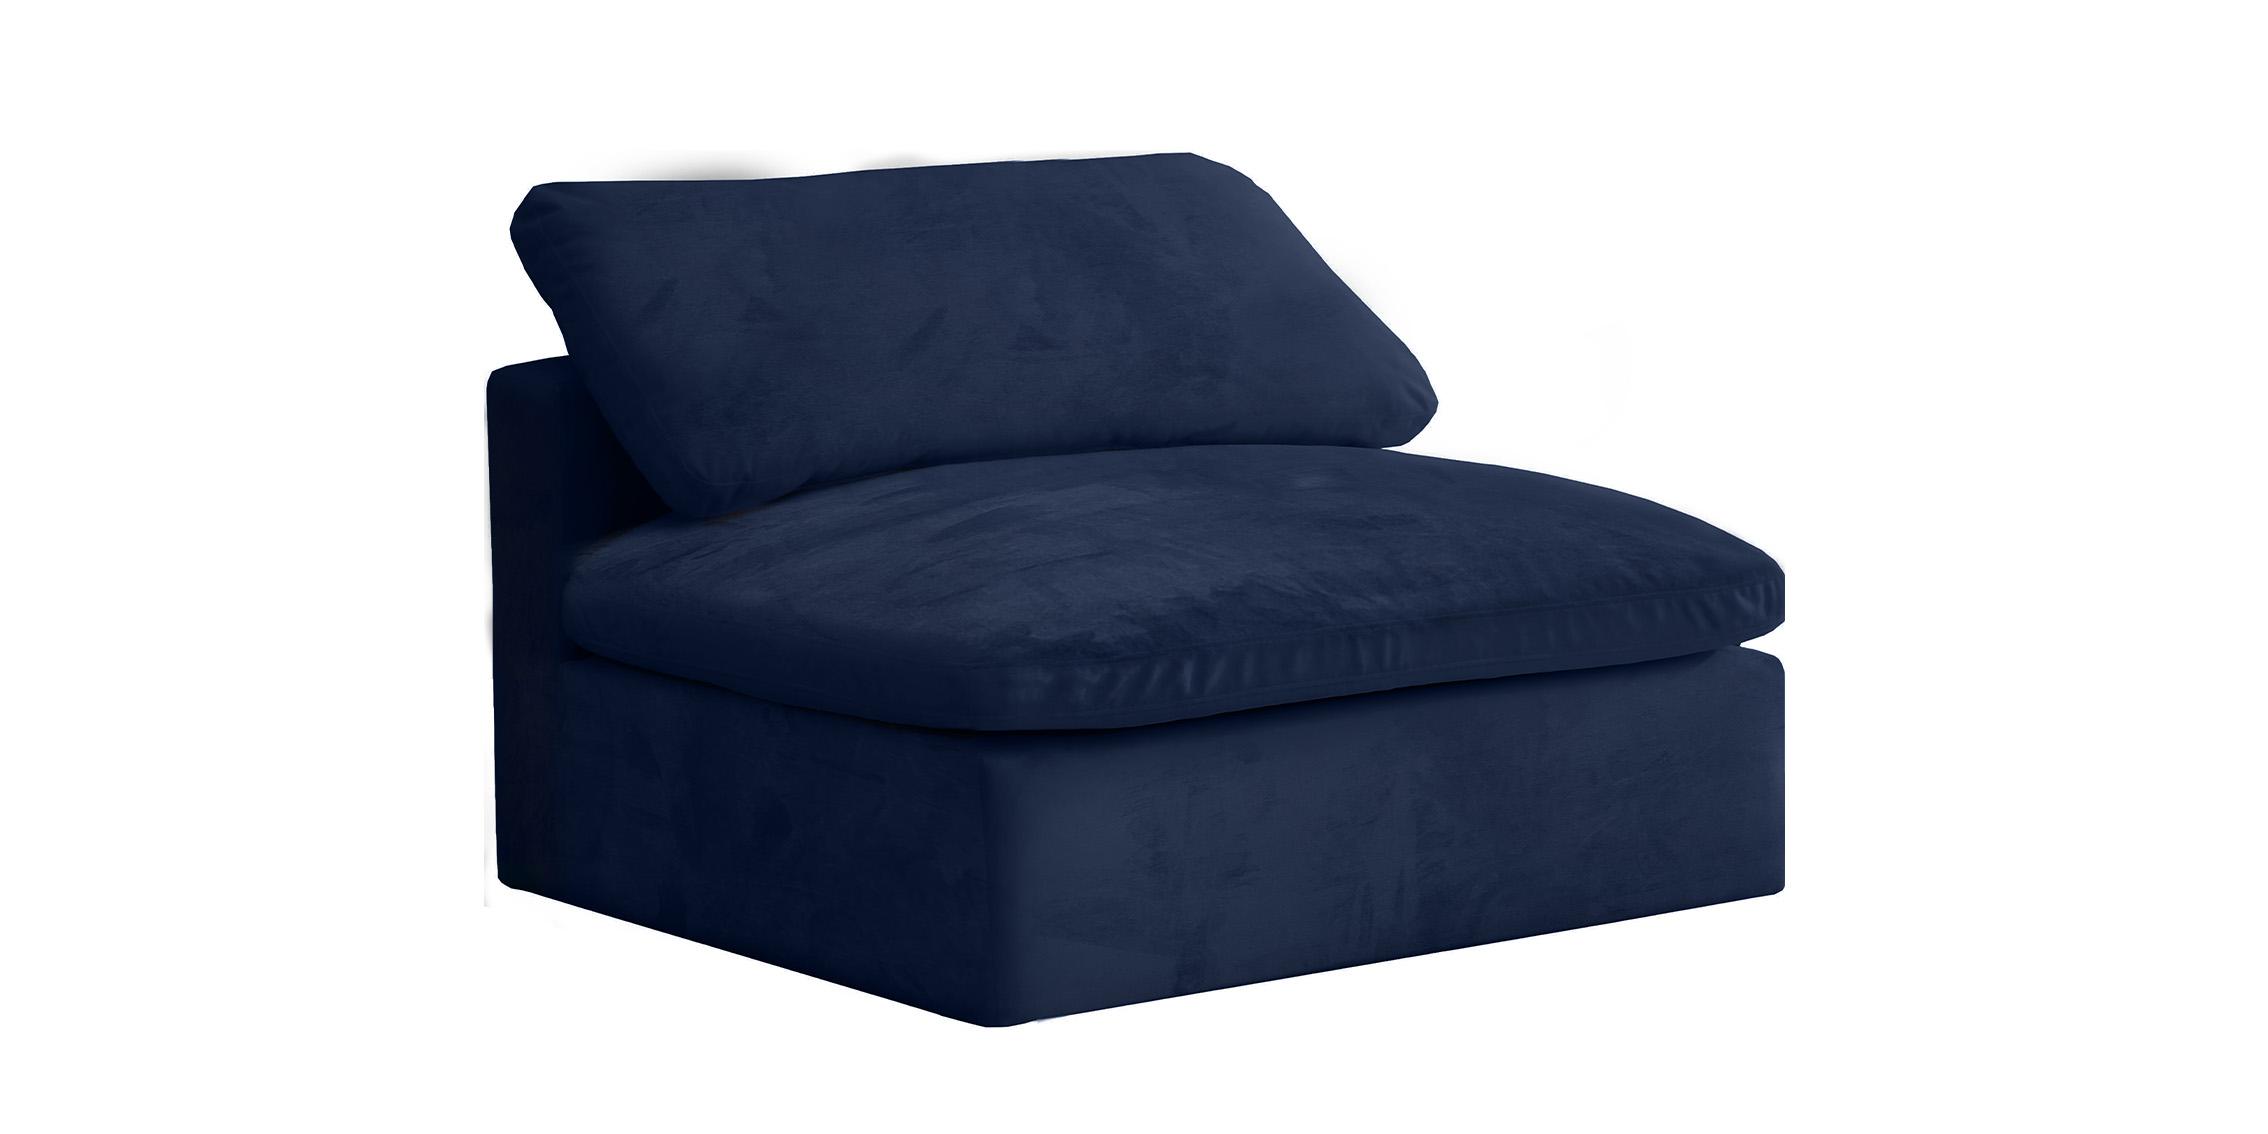 Contemporary, Modern Armless Chair 634Navy-Armless 634Navy-Armless in Navy Fabric